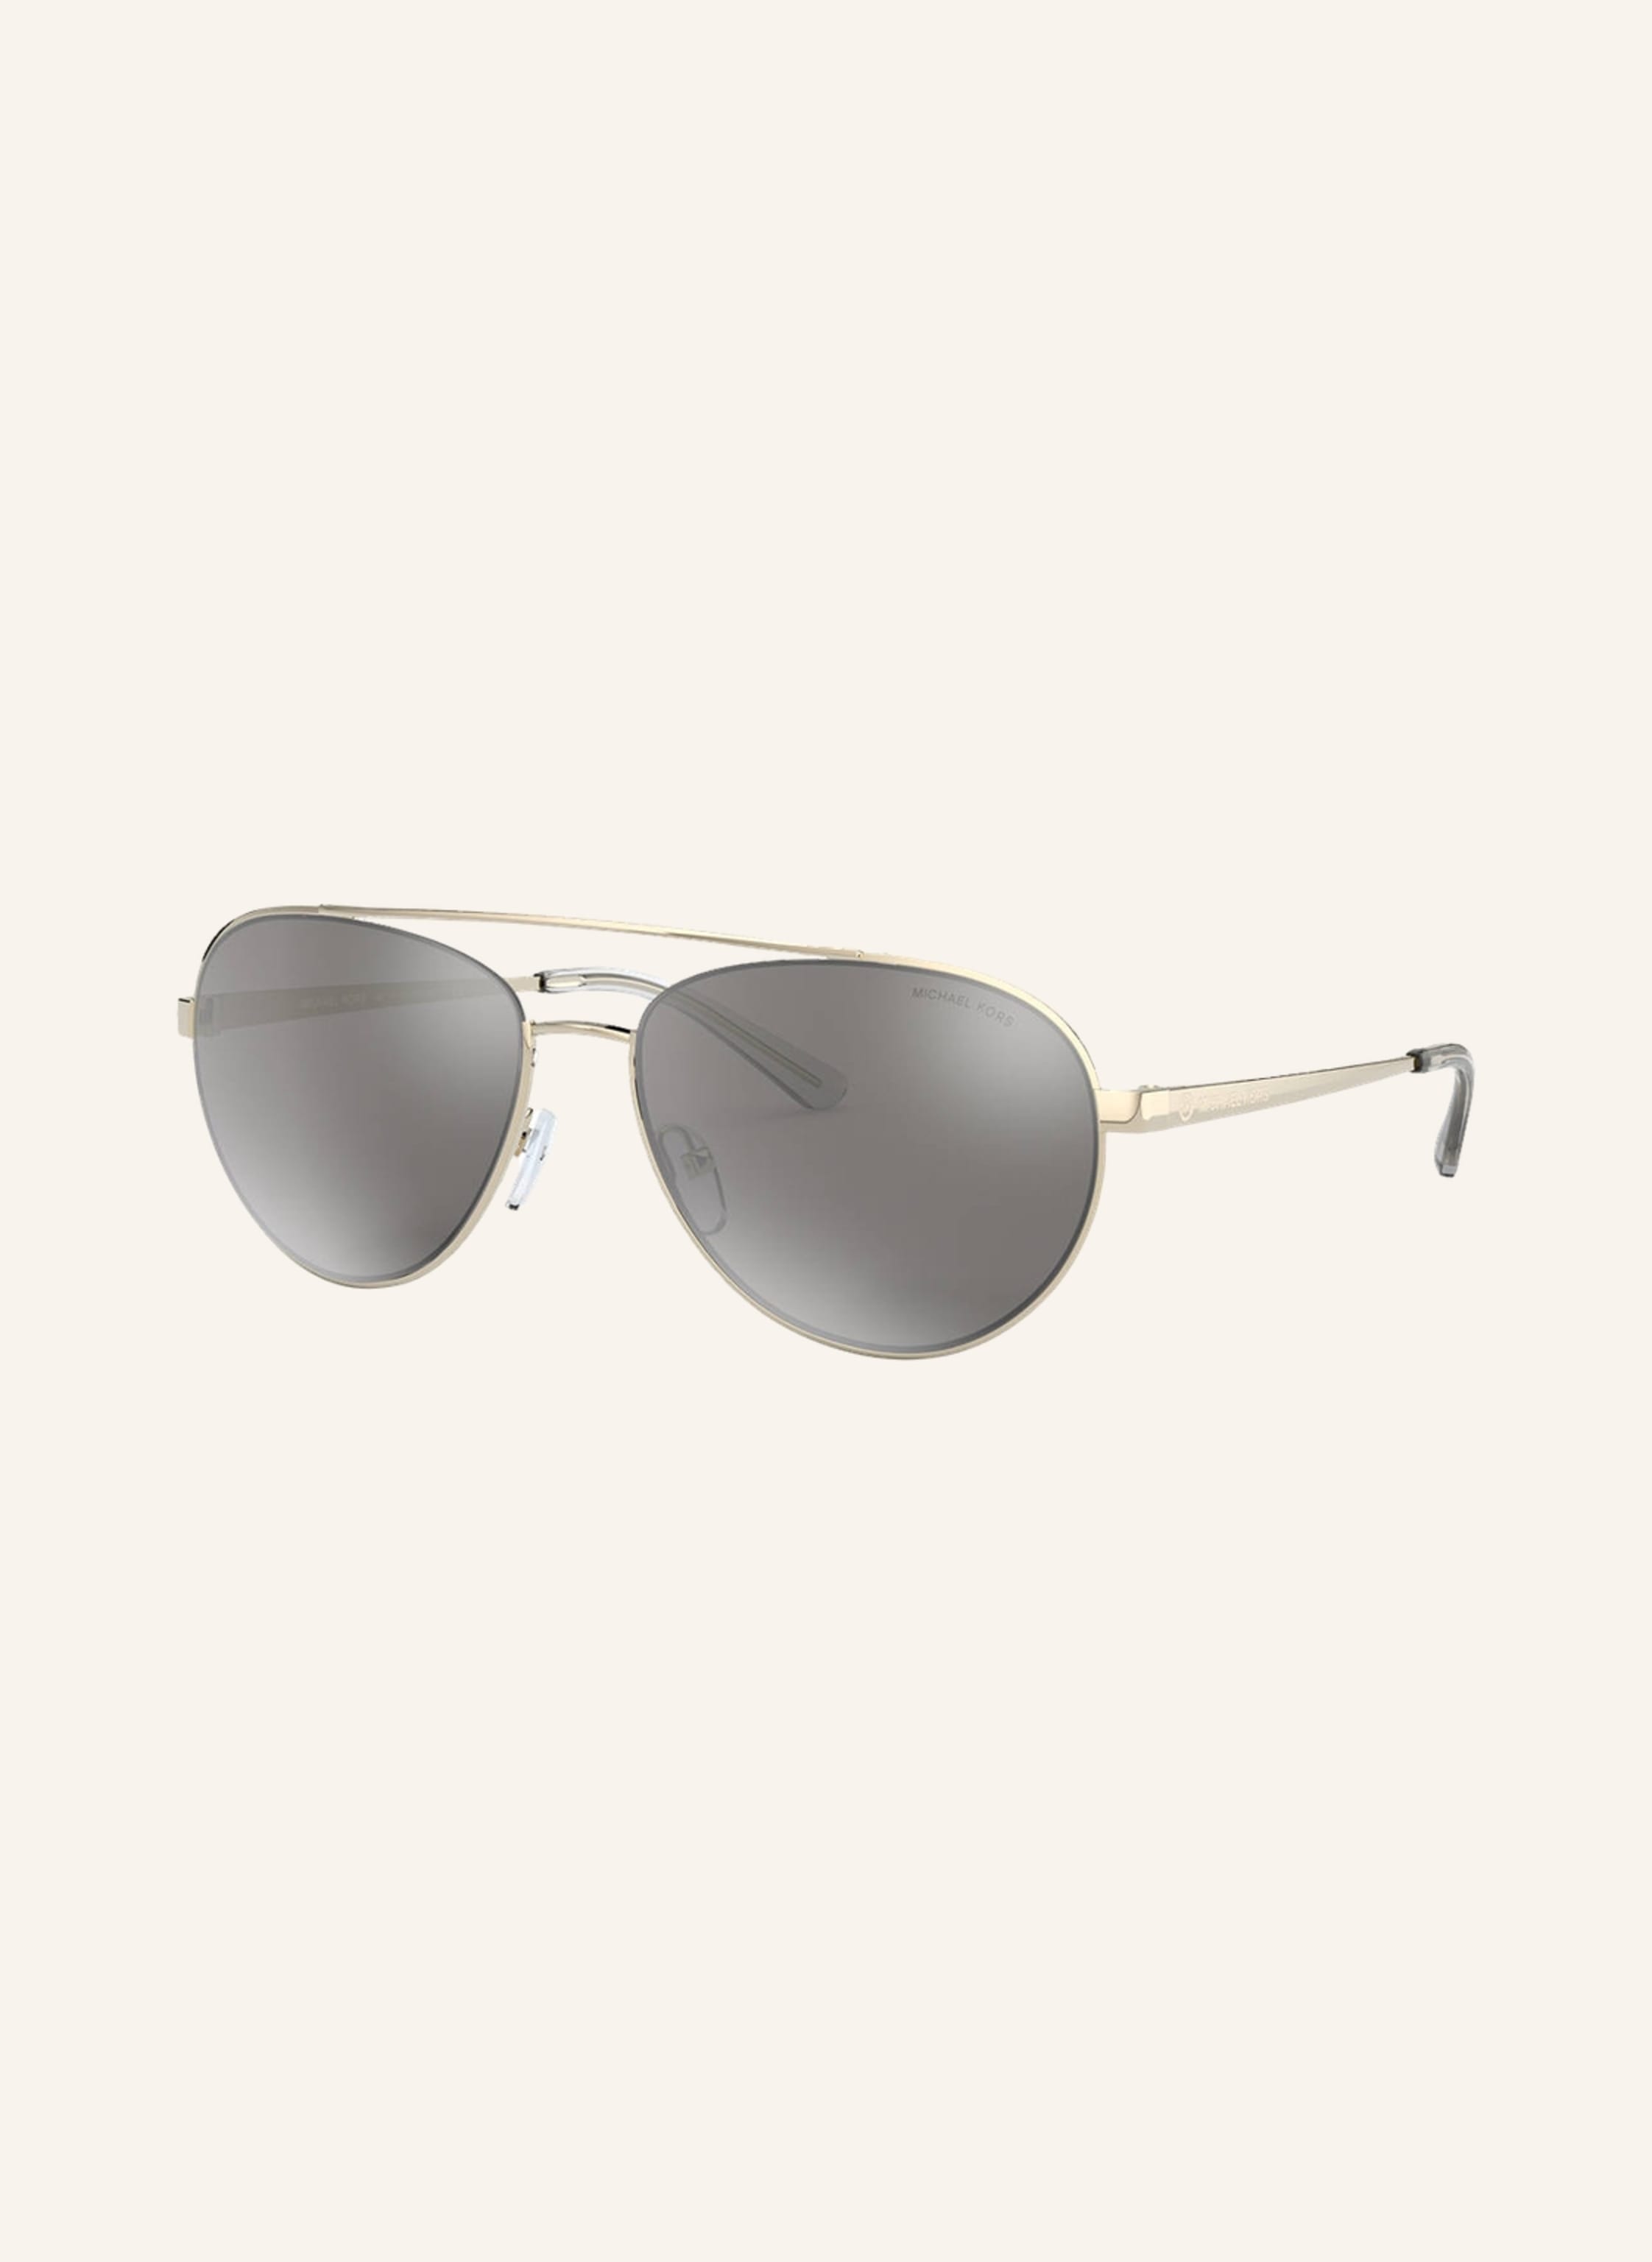 MICHAEL KORS Sunglasses MK1071 in 10146g - gold/gray | Breuninger